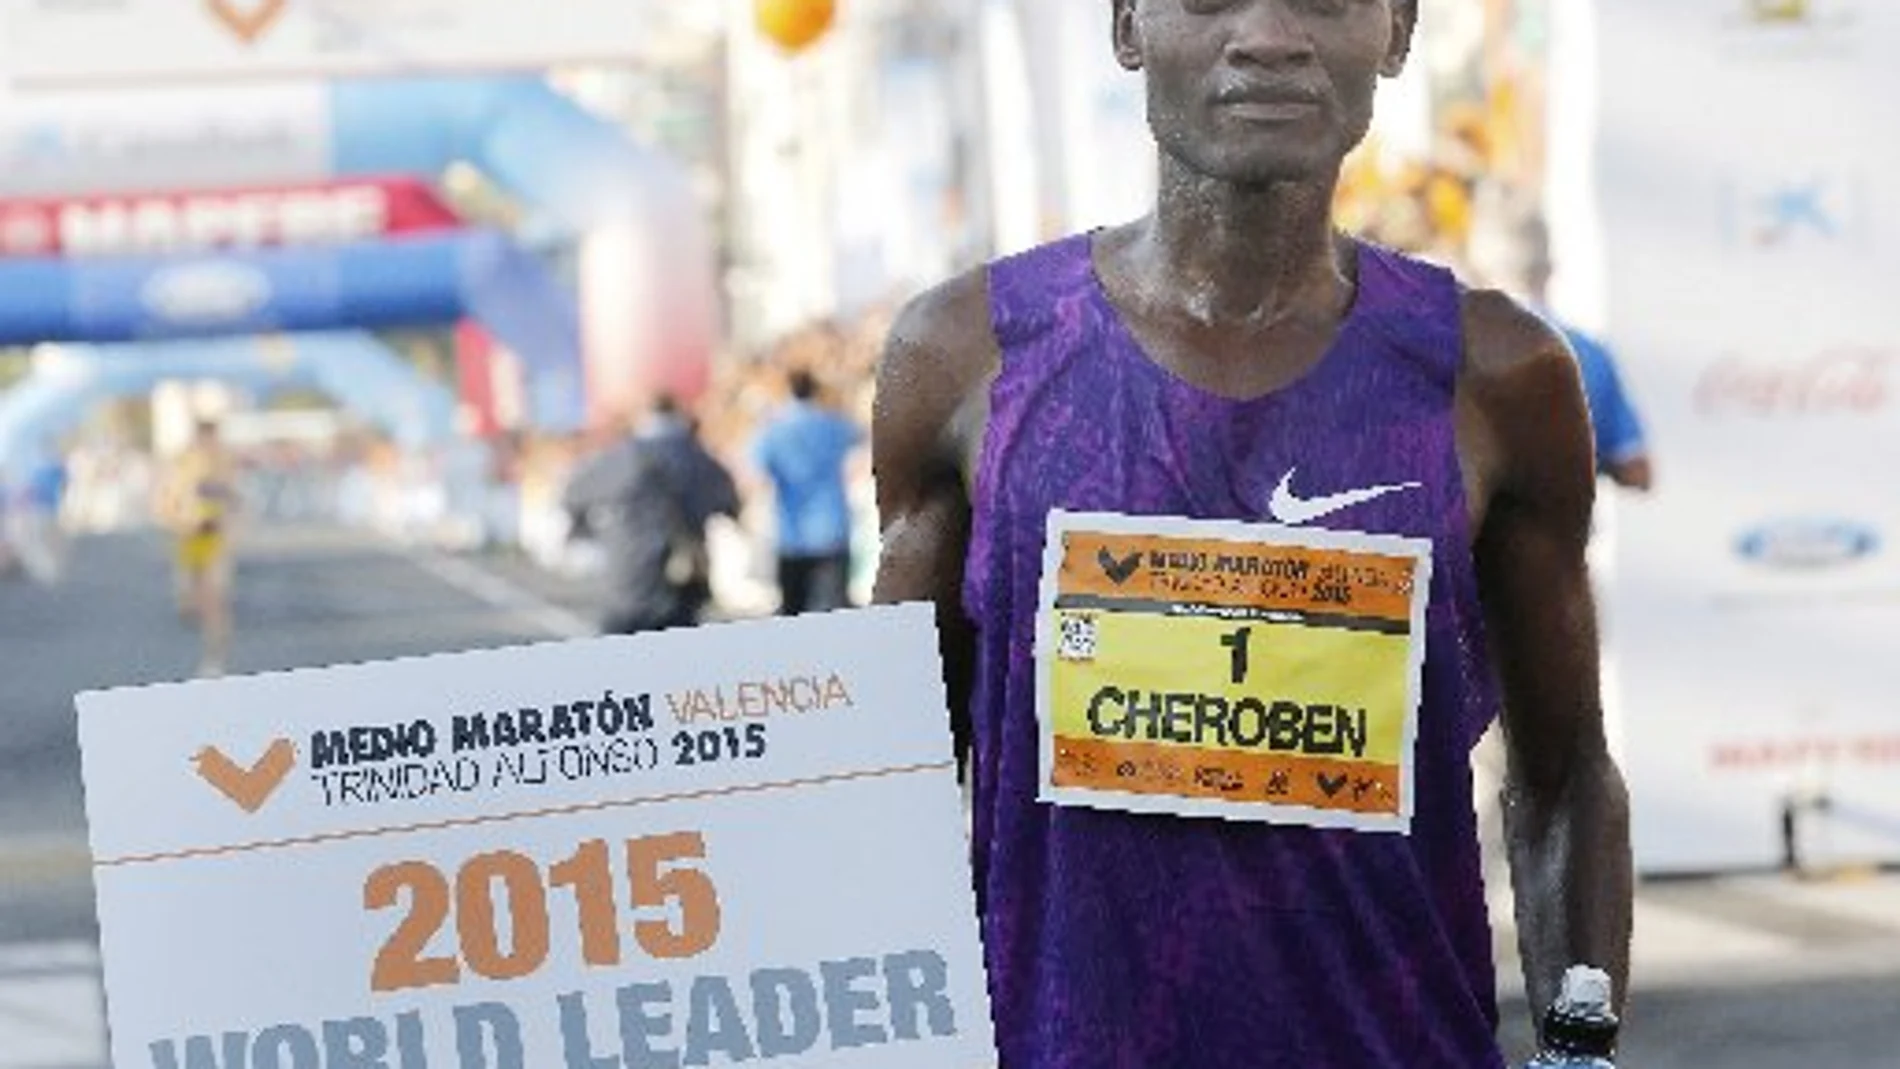 El keniano Abraham Cheroben, con un tiempo de 59:10, logró la mejor marca mundial del año al imponerse en el medio maratón Trinidad Alfonso de Valencia.